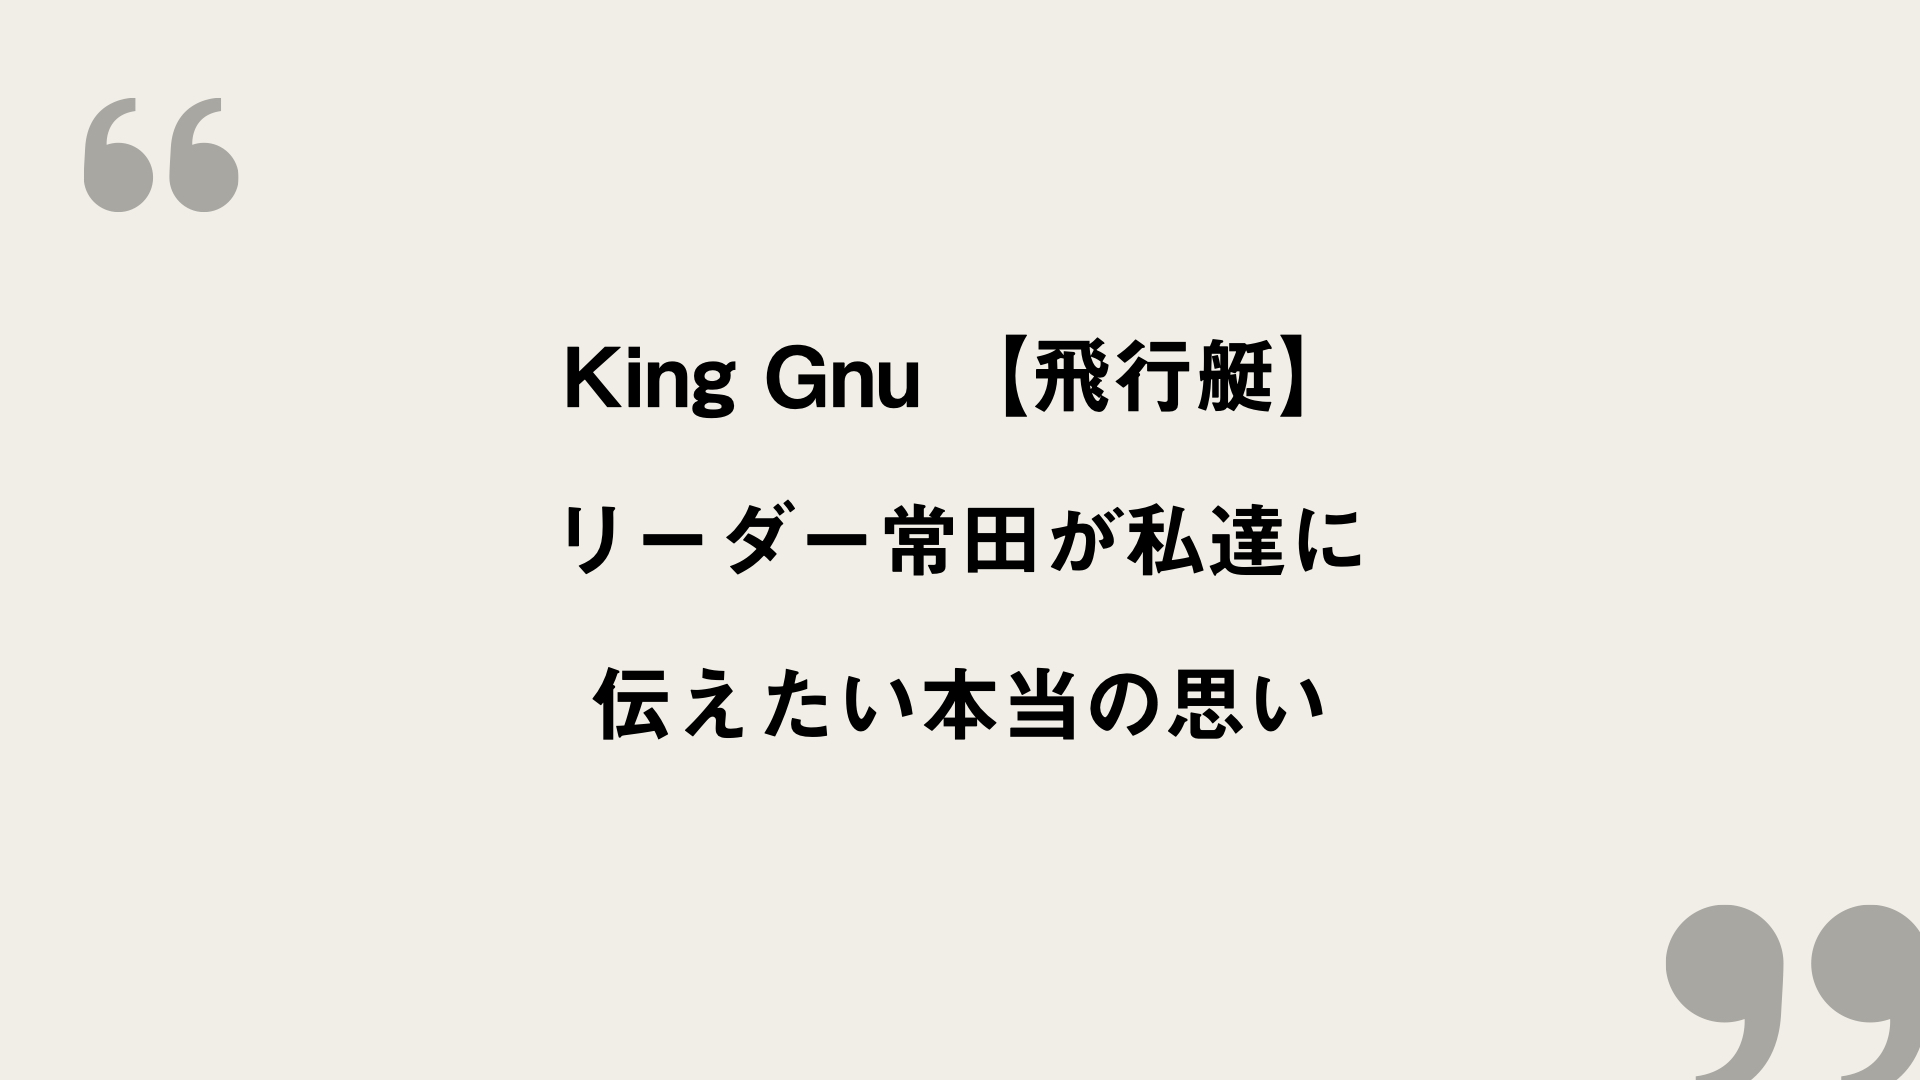 飛行艇 King Gnu 歌詞の意味を考察 リーダー常田が私達に伝えたい本当の思い Framu Media